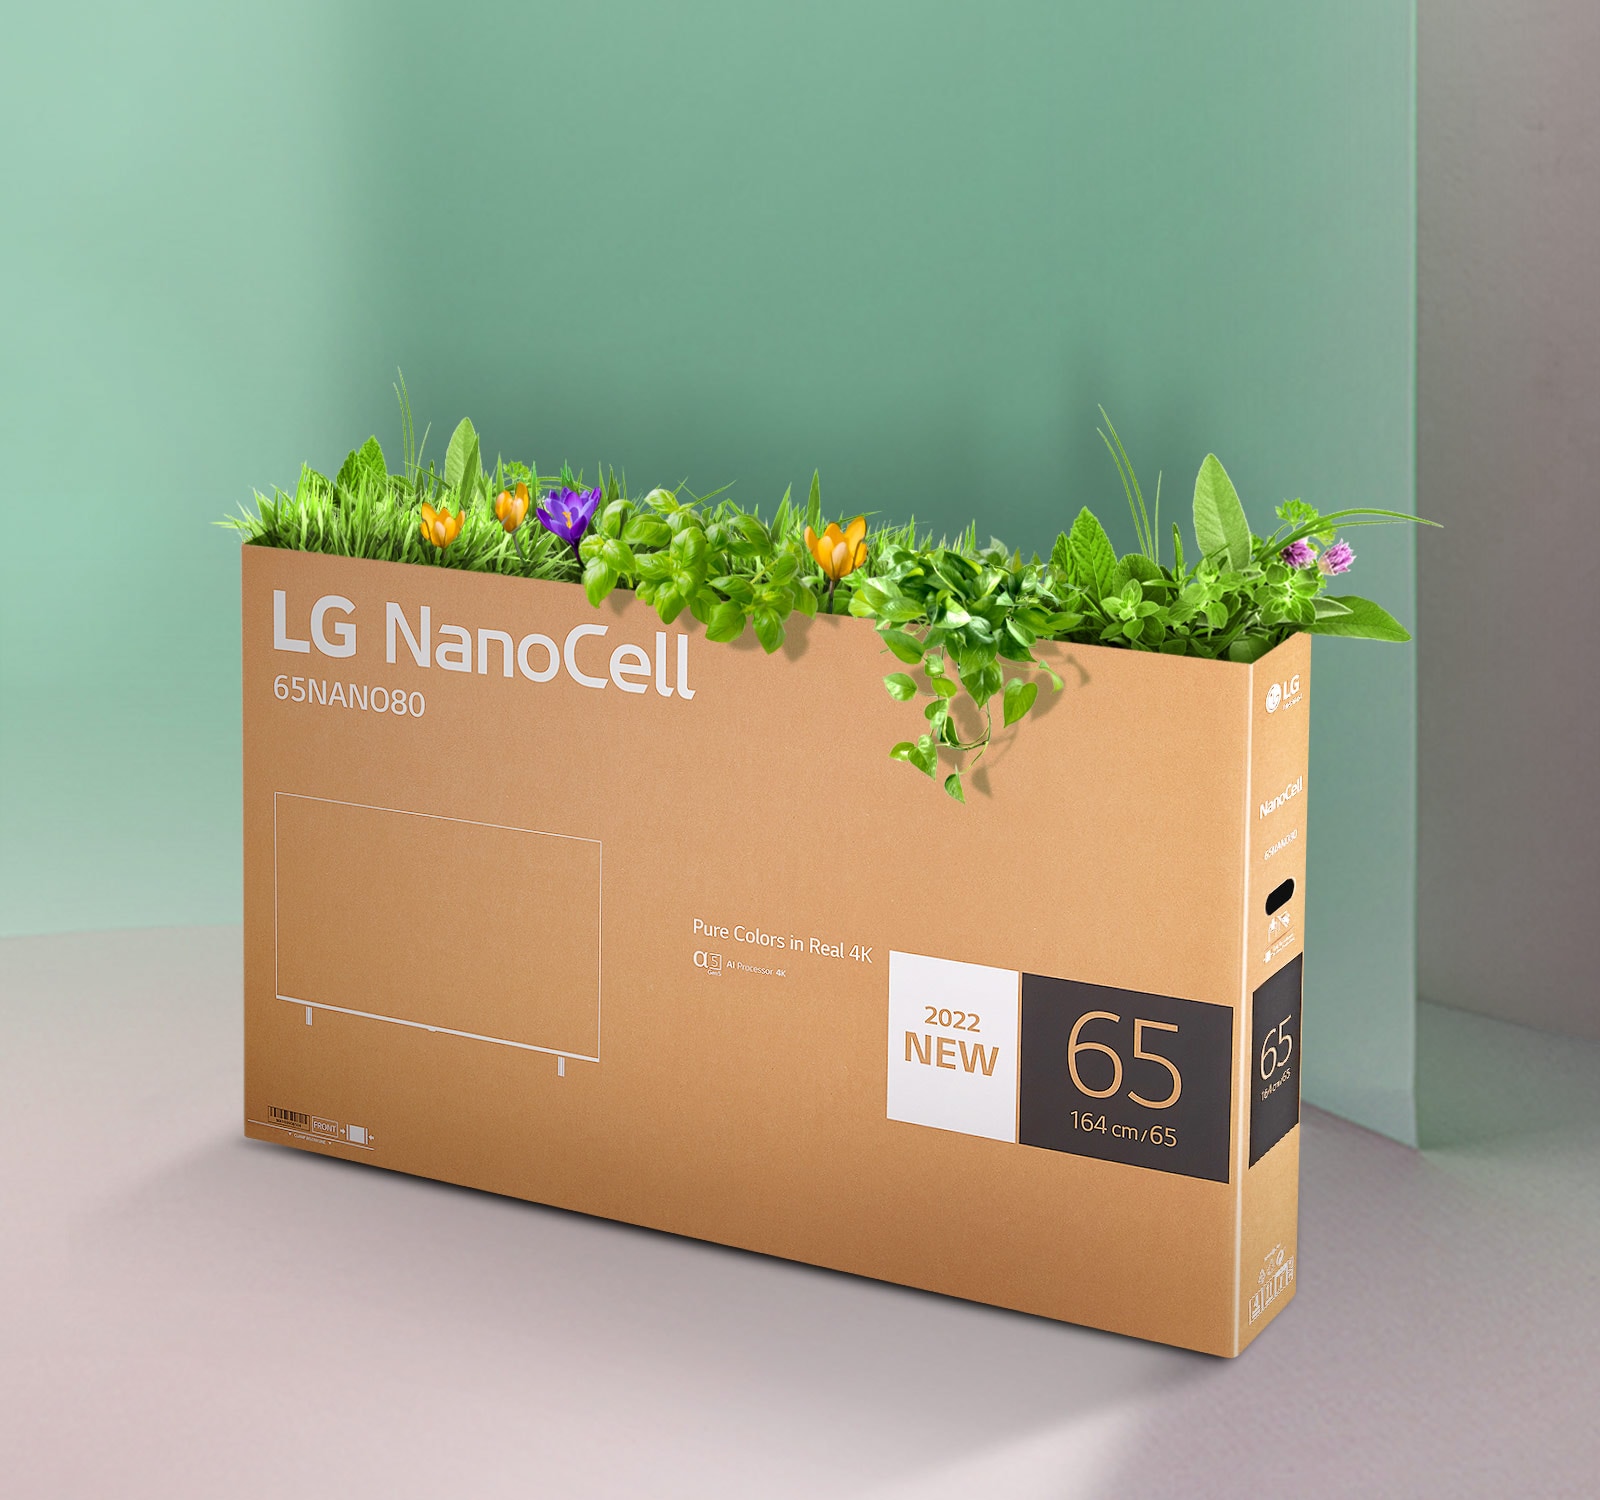 Boîte recyclable de LG NanoCell TV avec des fleurs et des plantes qui poussent du haut de la boîte.